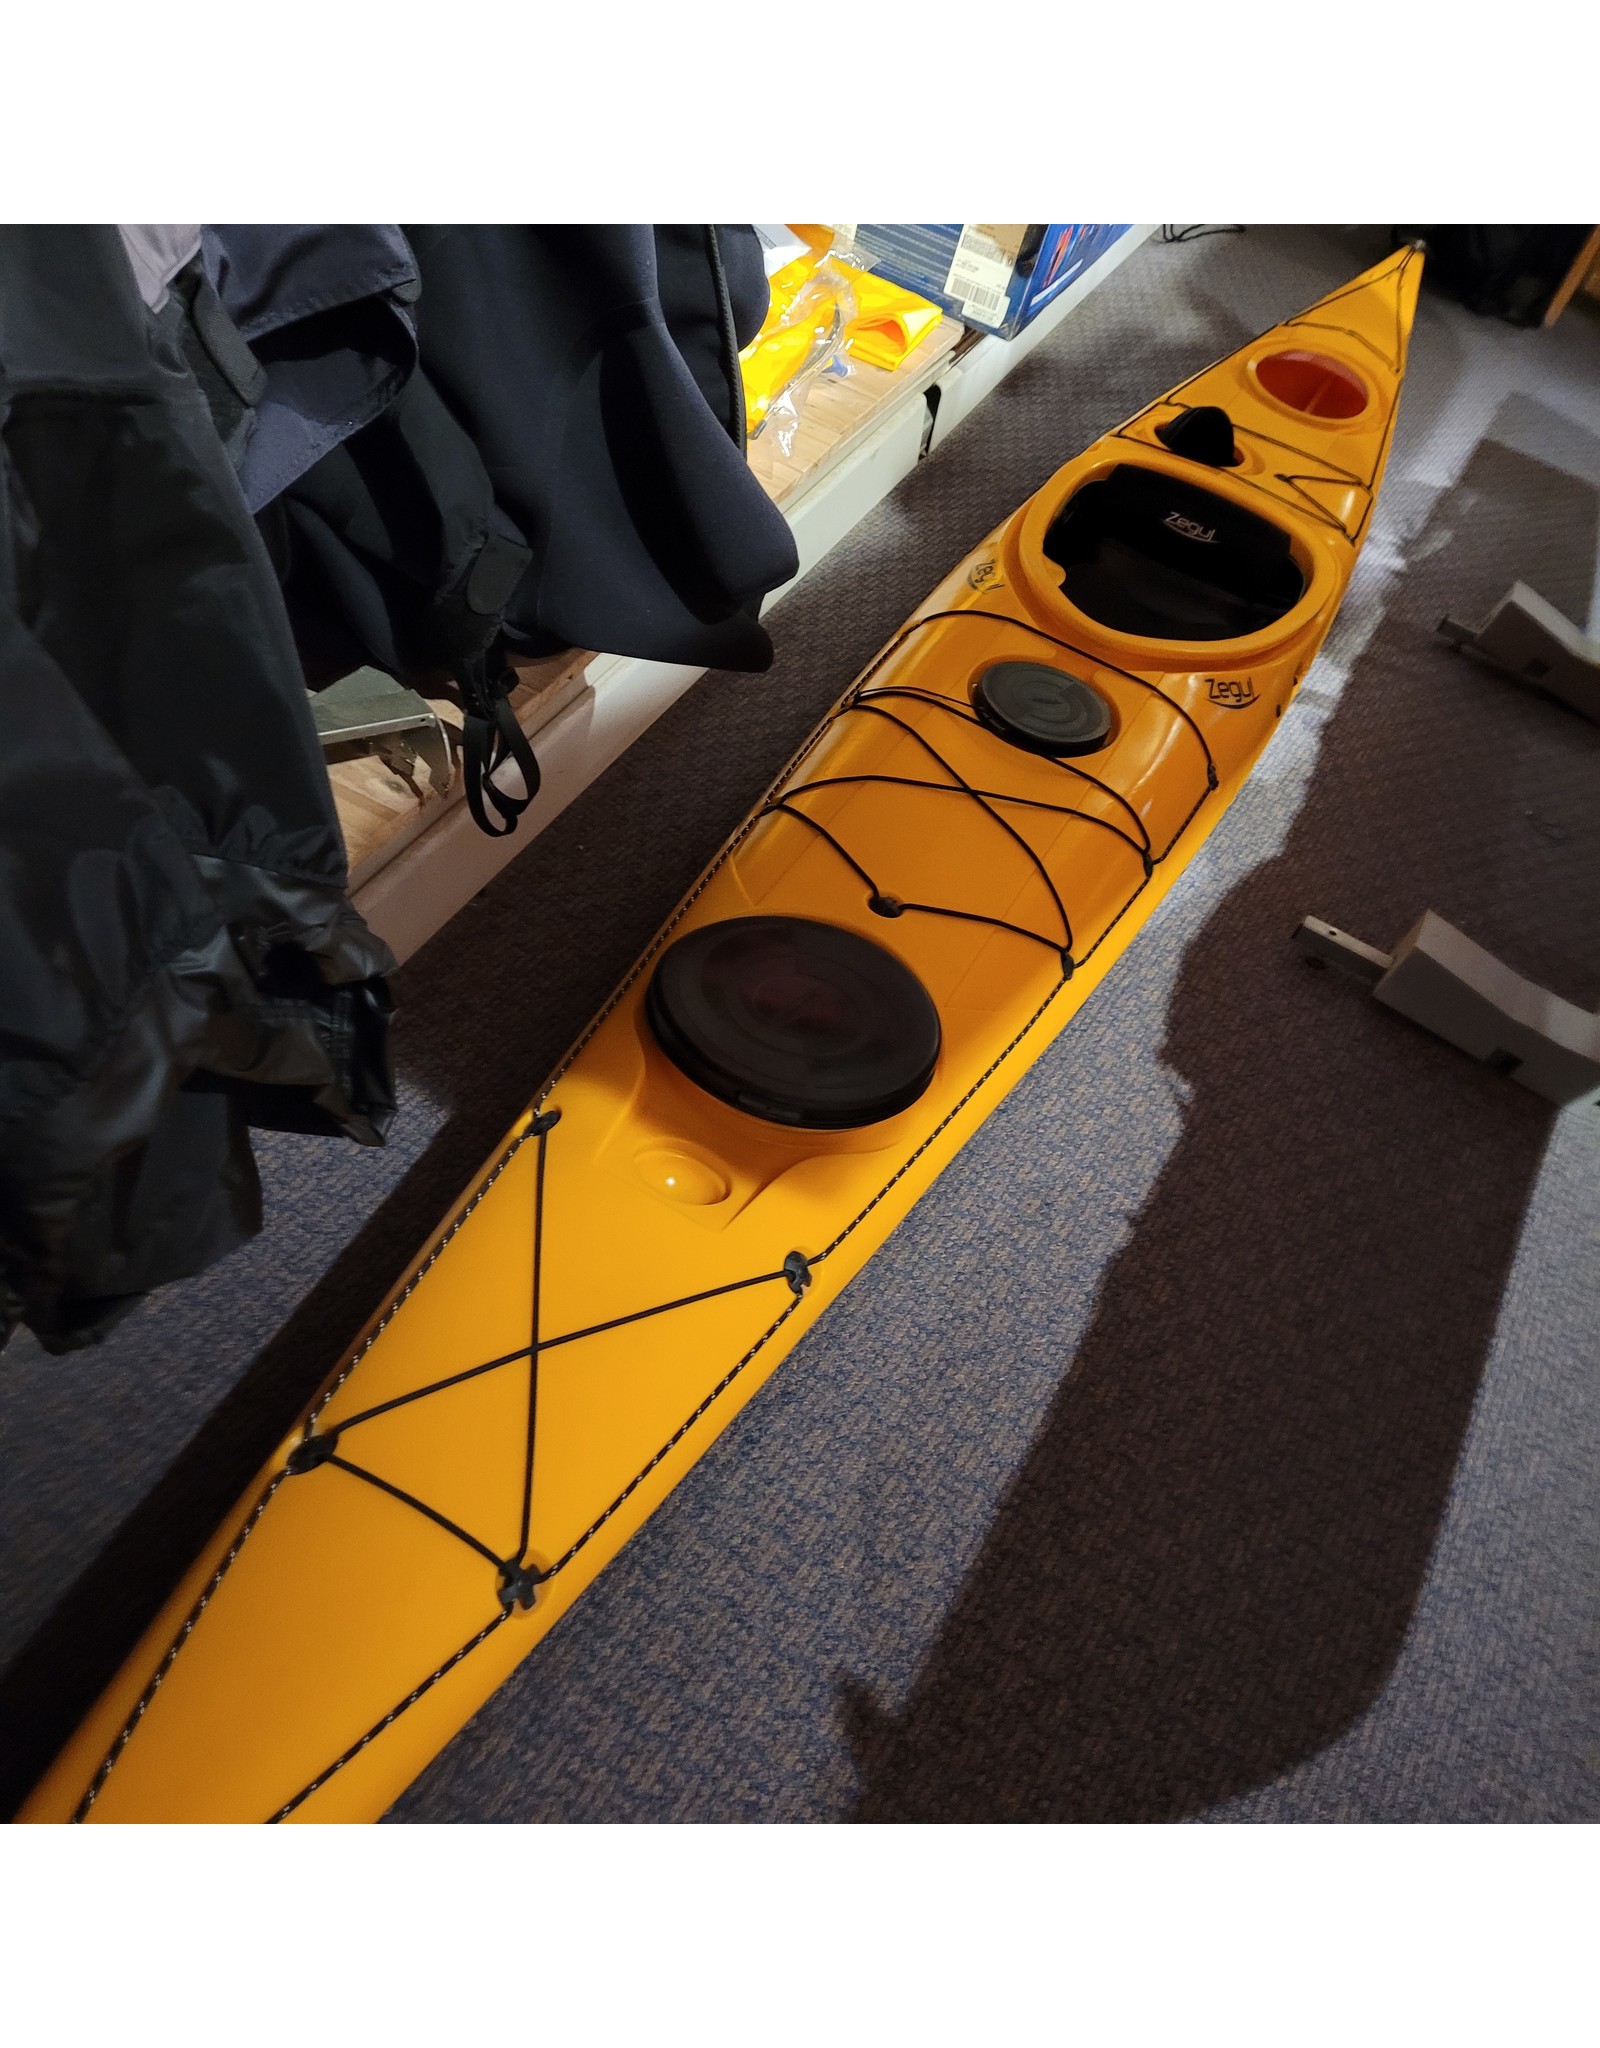 Zegul Zegul kayak Arrow NUKA PE LV yellow - USED